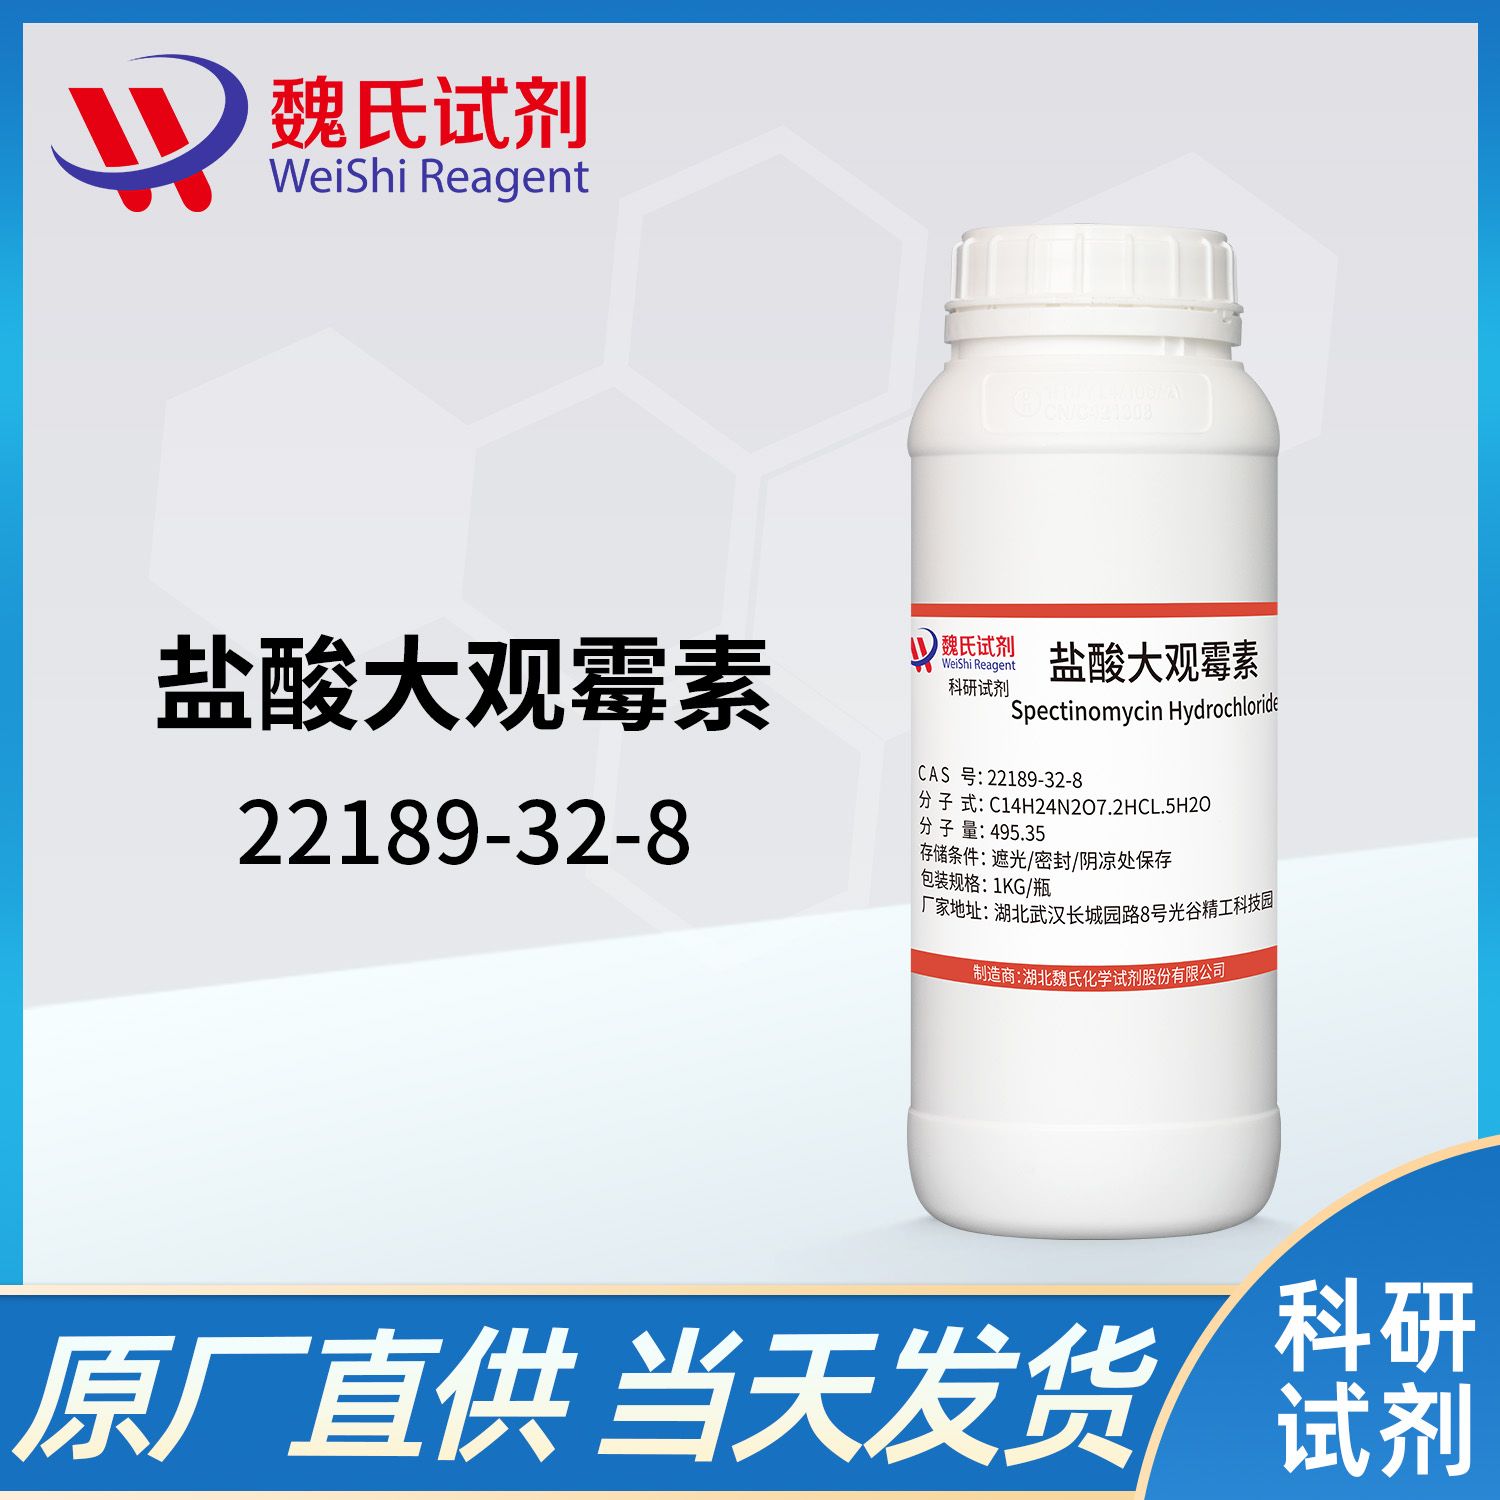 22189-32-8 /盐酸大观霉素；盐酸壮观霉素-五水物/Spectinomycin dihydrochloride pentahydrate